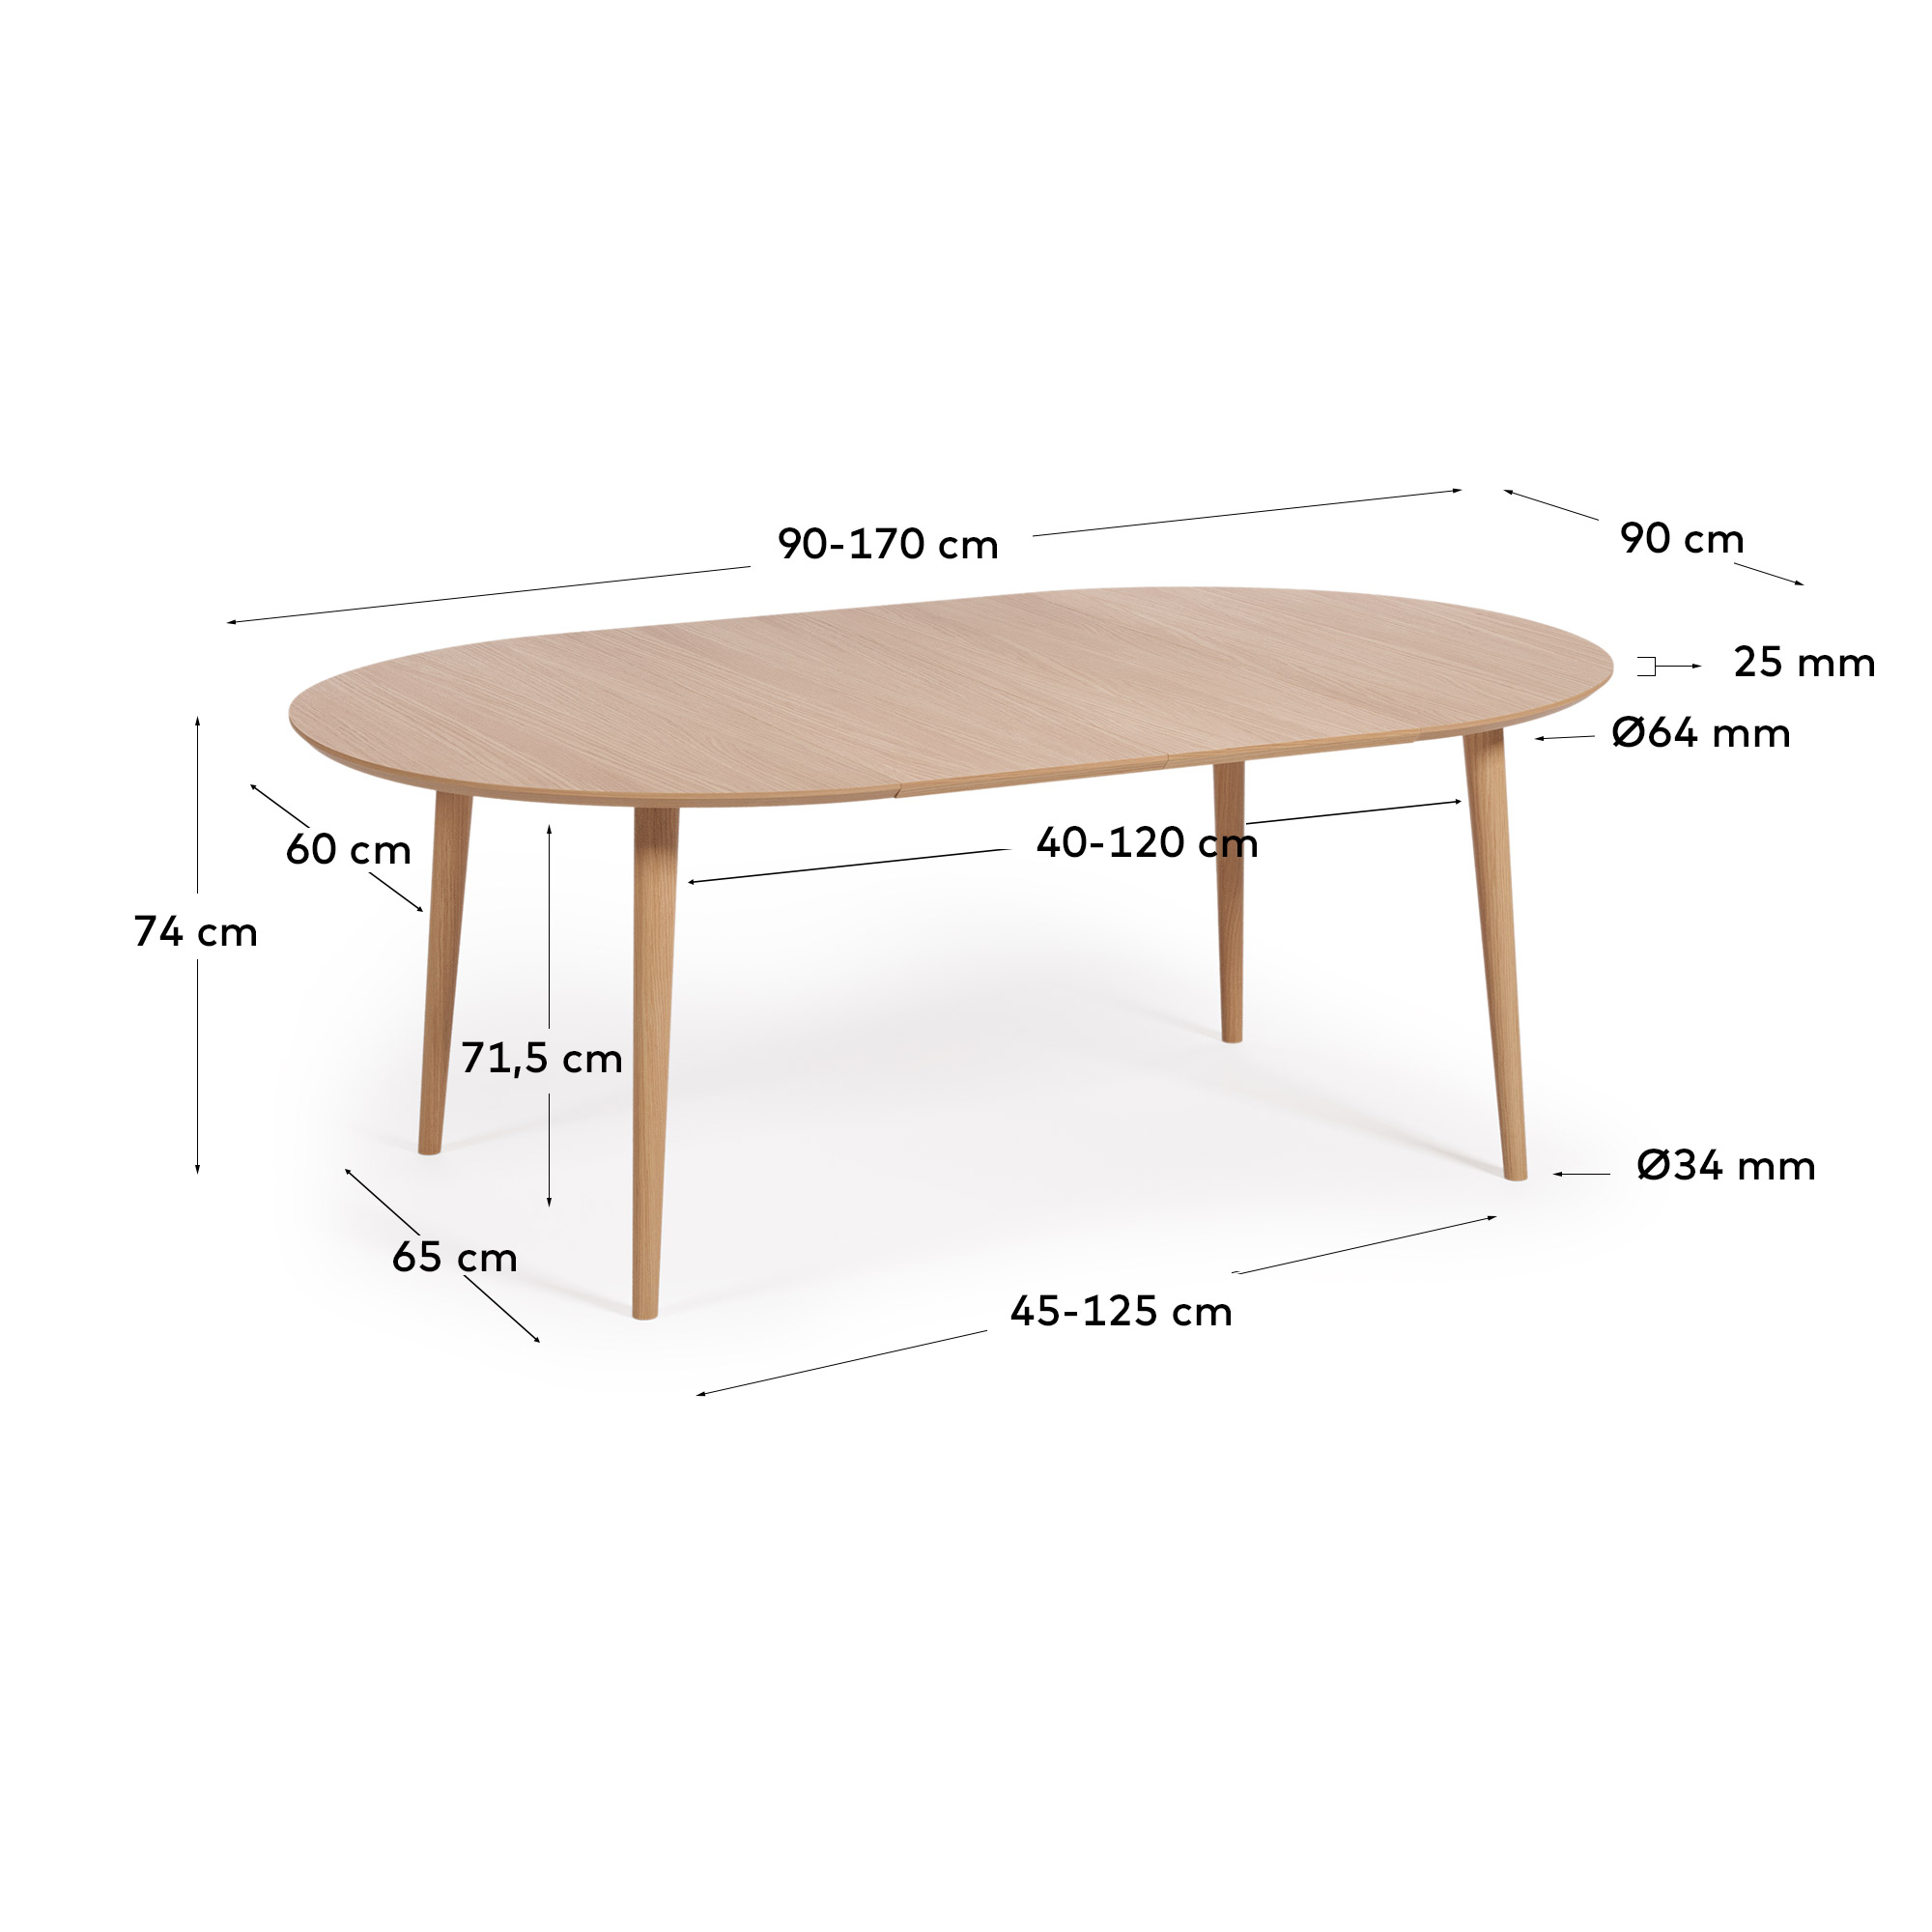 오퀴 네츄럴 확장형 다이닝 테이블 (정원형/ 90 x 90-170cm) - 크기